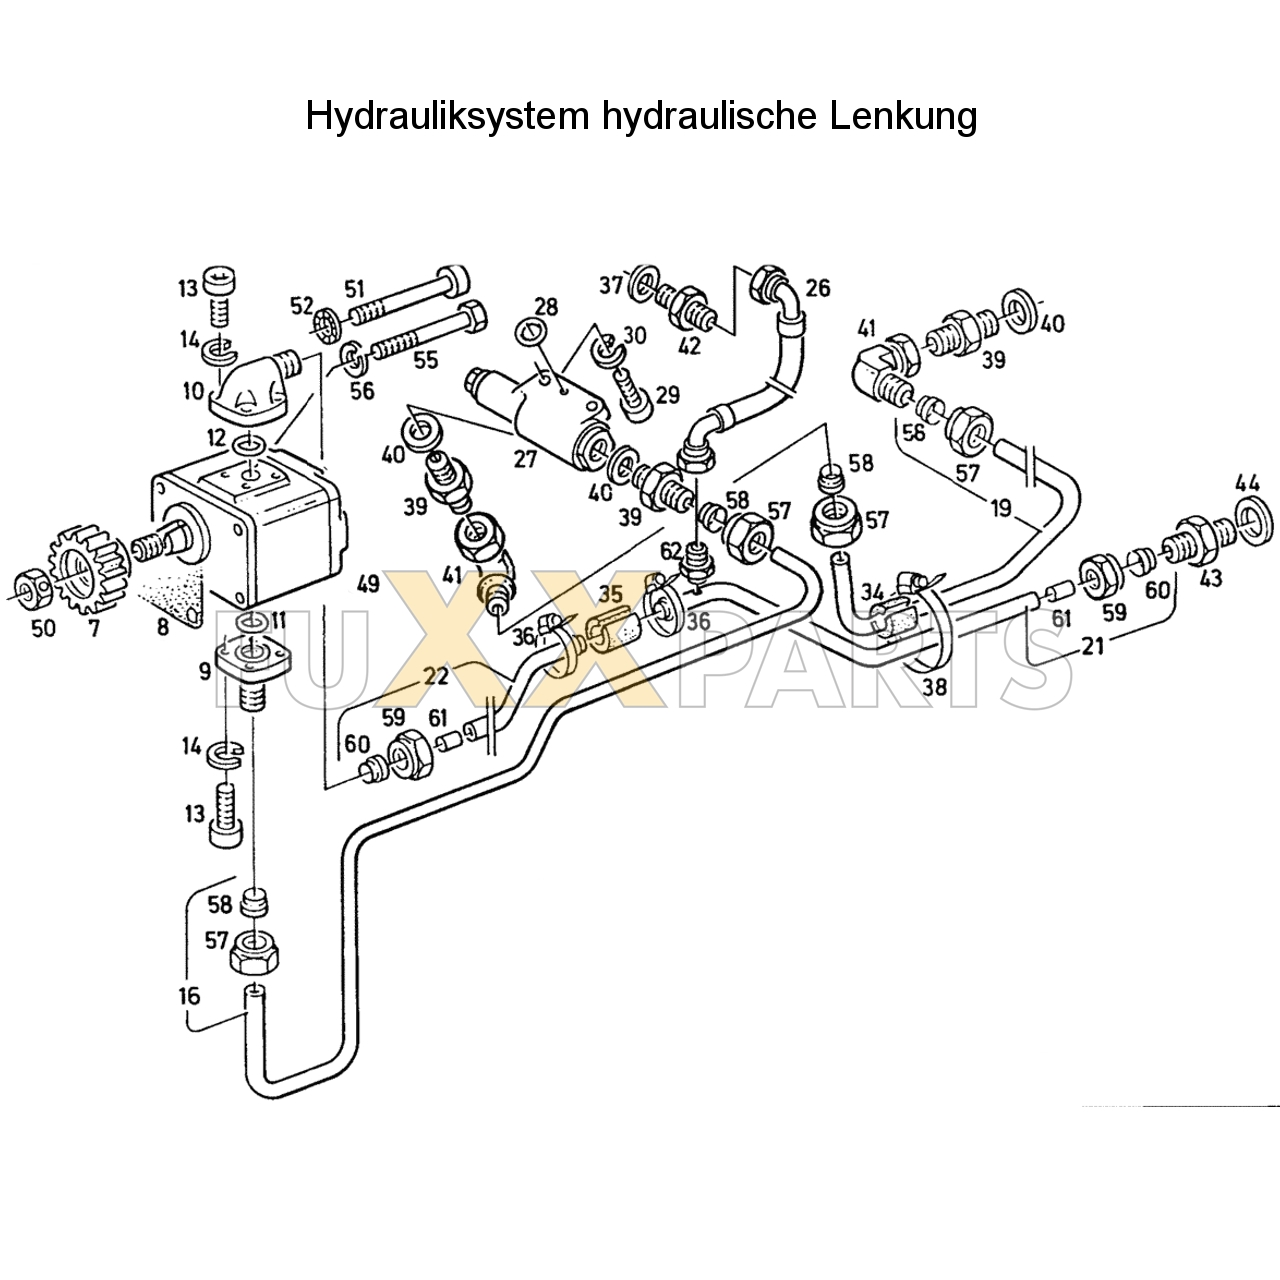 D 4507 Hydrauliksystem hyd. Lenkung